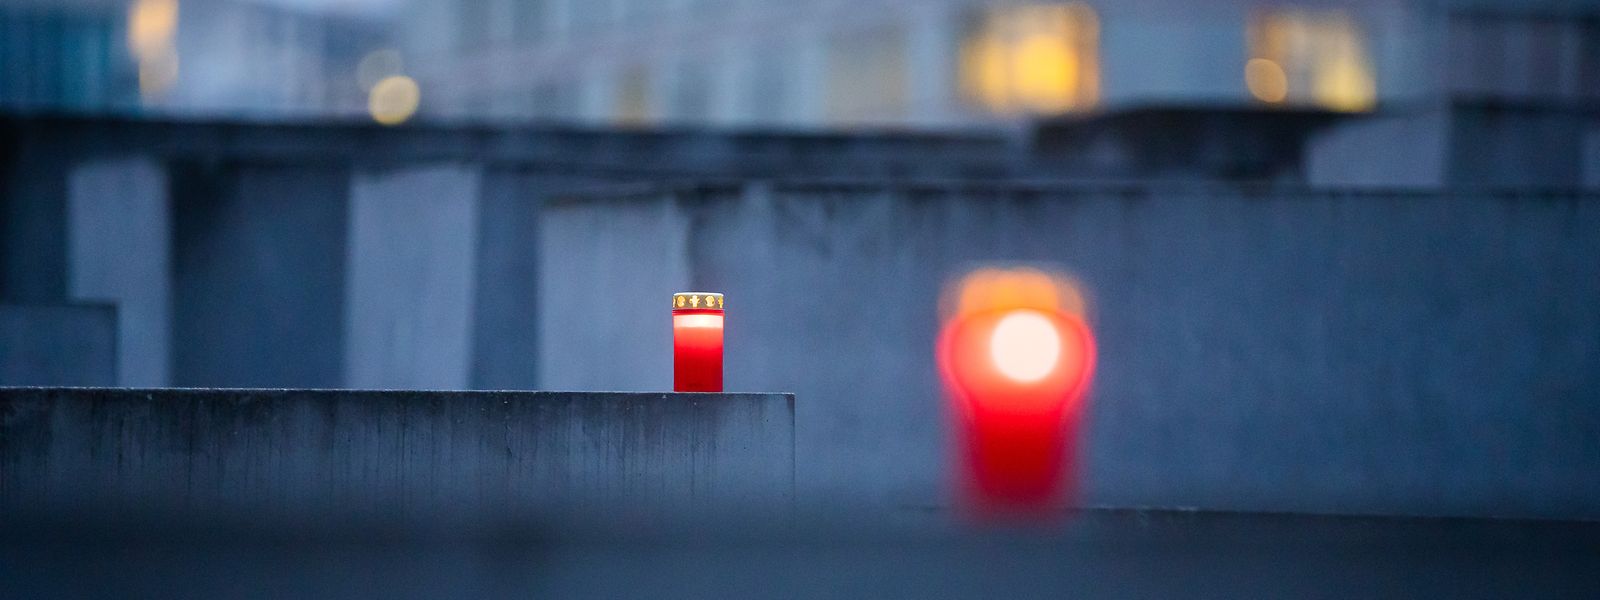 Am Freitag ist der Internationalen Tag des Gedenkens an die Opfer des Holocaust.